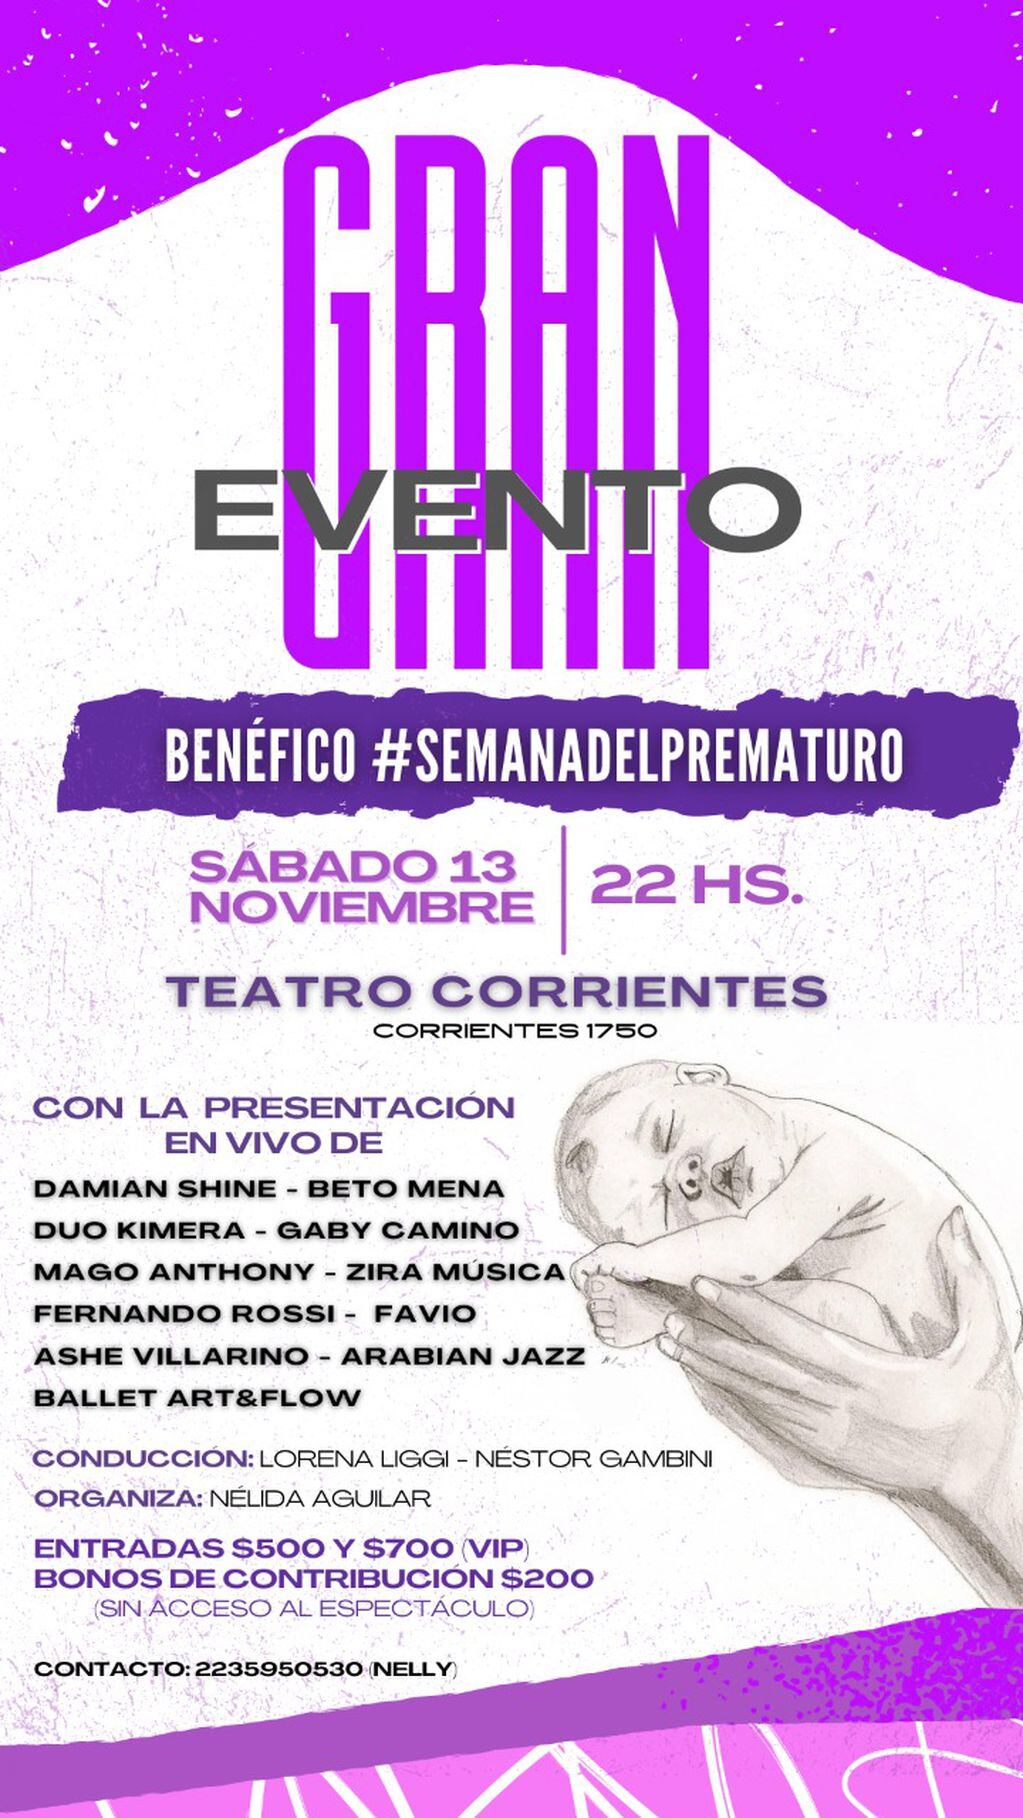 Será el sábado 13 de noviembre en el Teatro Corrientes de Mar del Plata y habrá recitales de bandas locales.